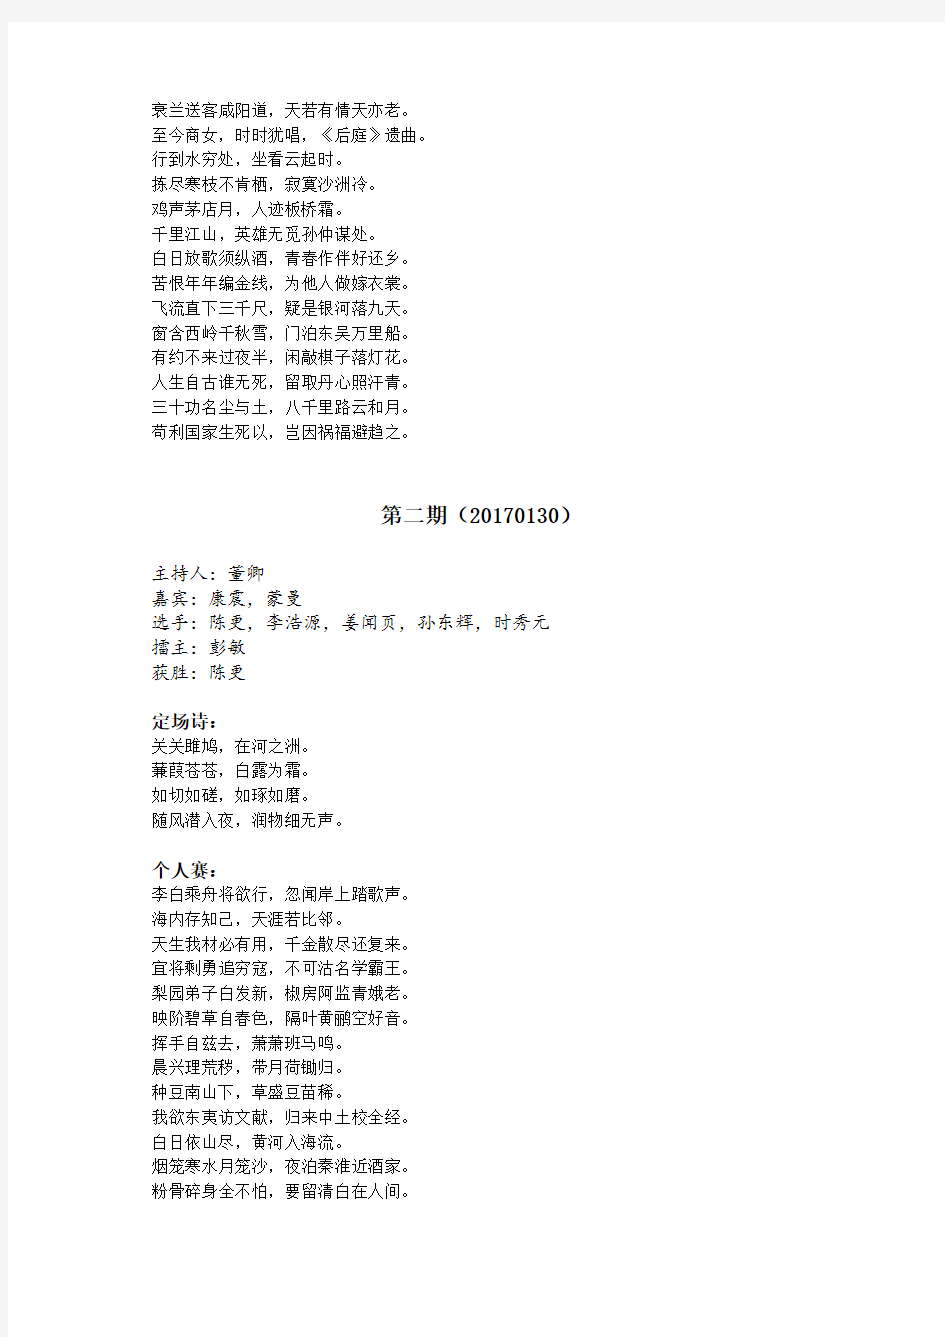 人生自有诗意-中国诗词大会第二季诗词全记录